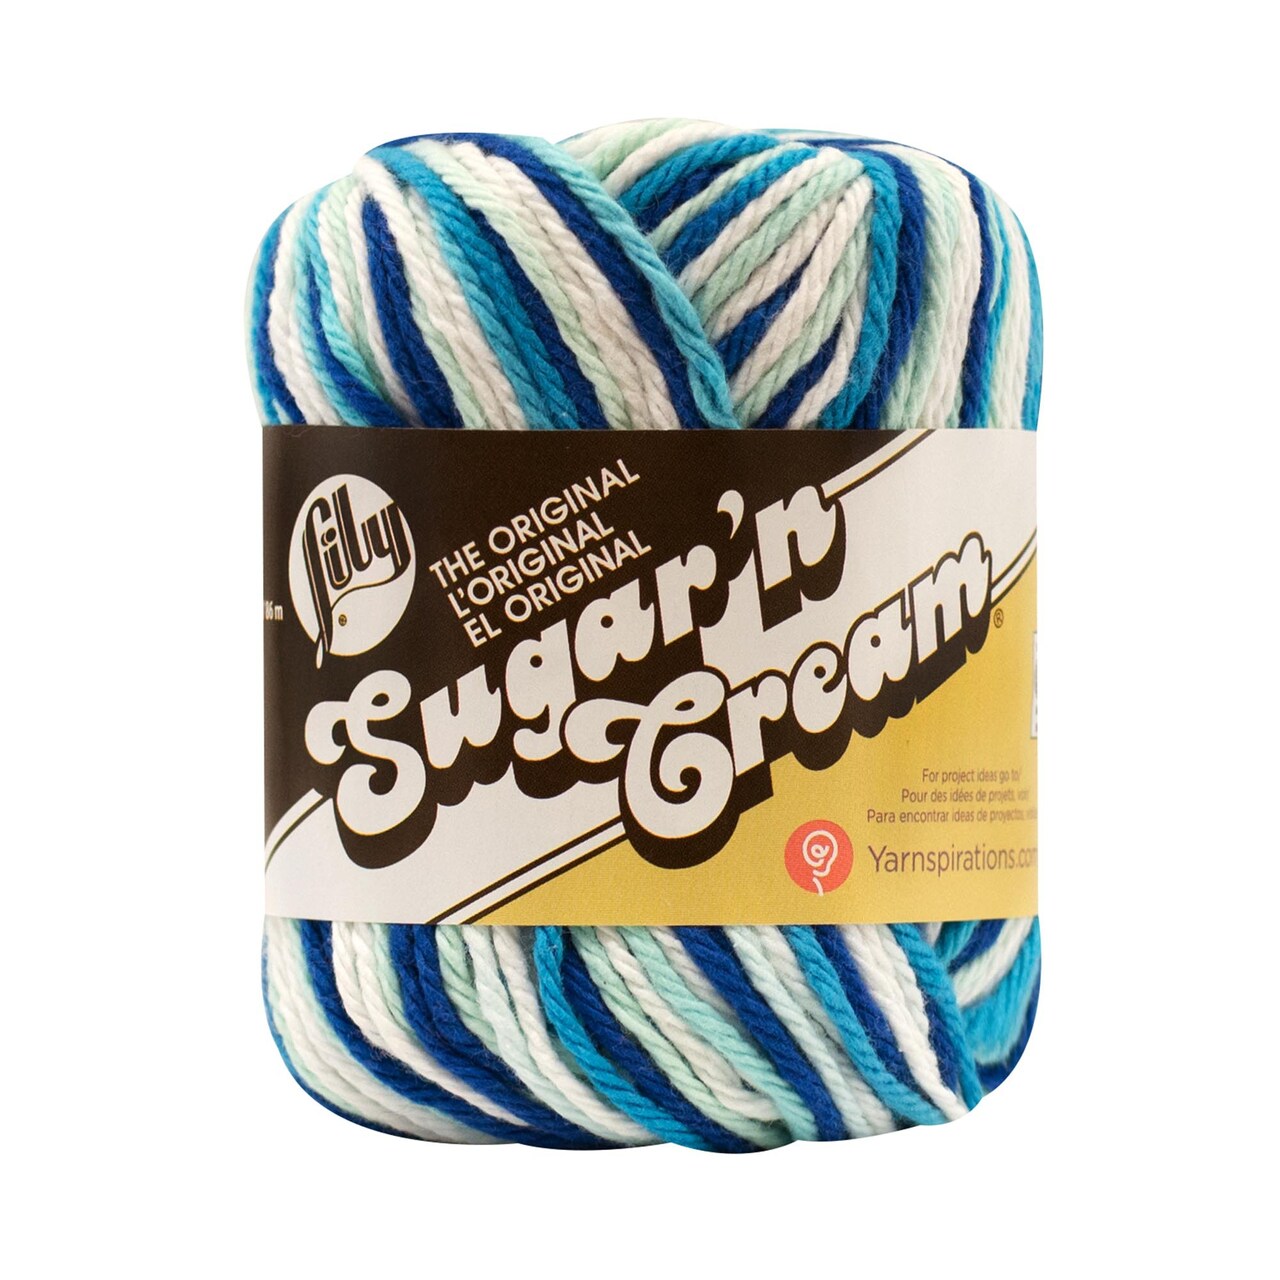 Lily Sugar 'n Cream Yarn Pack